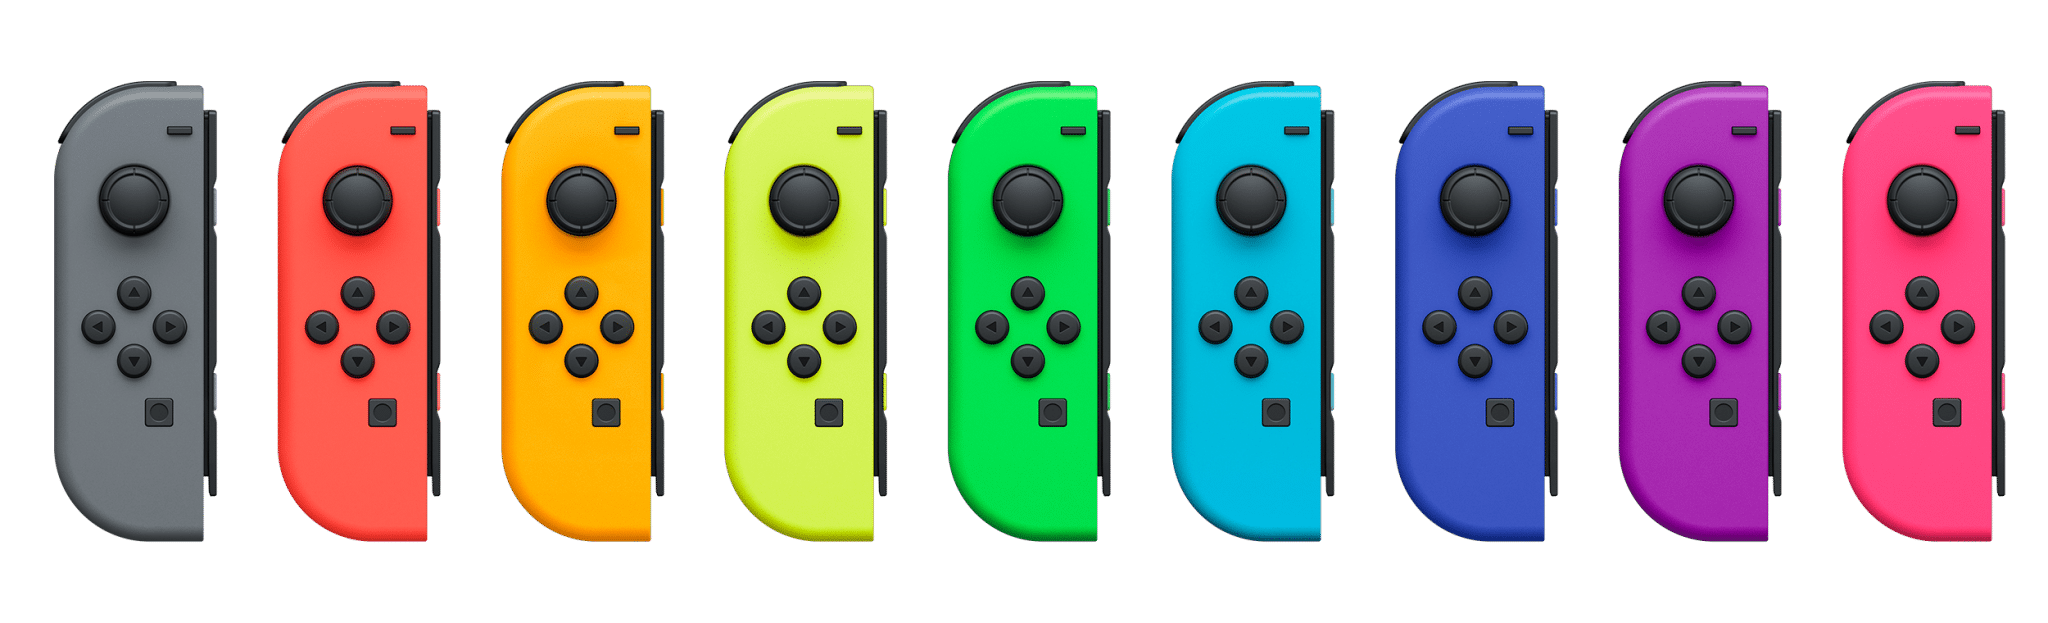 Non solo America: anche Nintendo Francia offre riparazioni gratuite per i Joy-Con